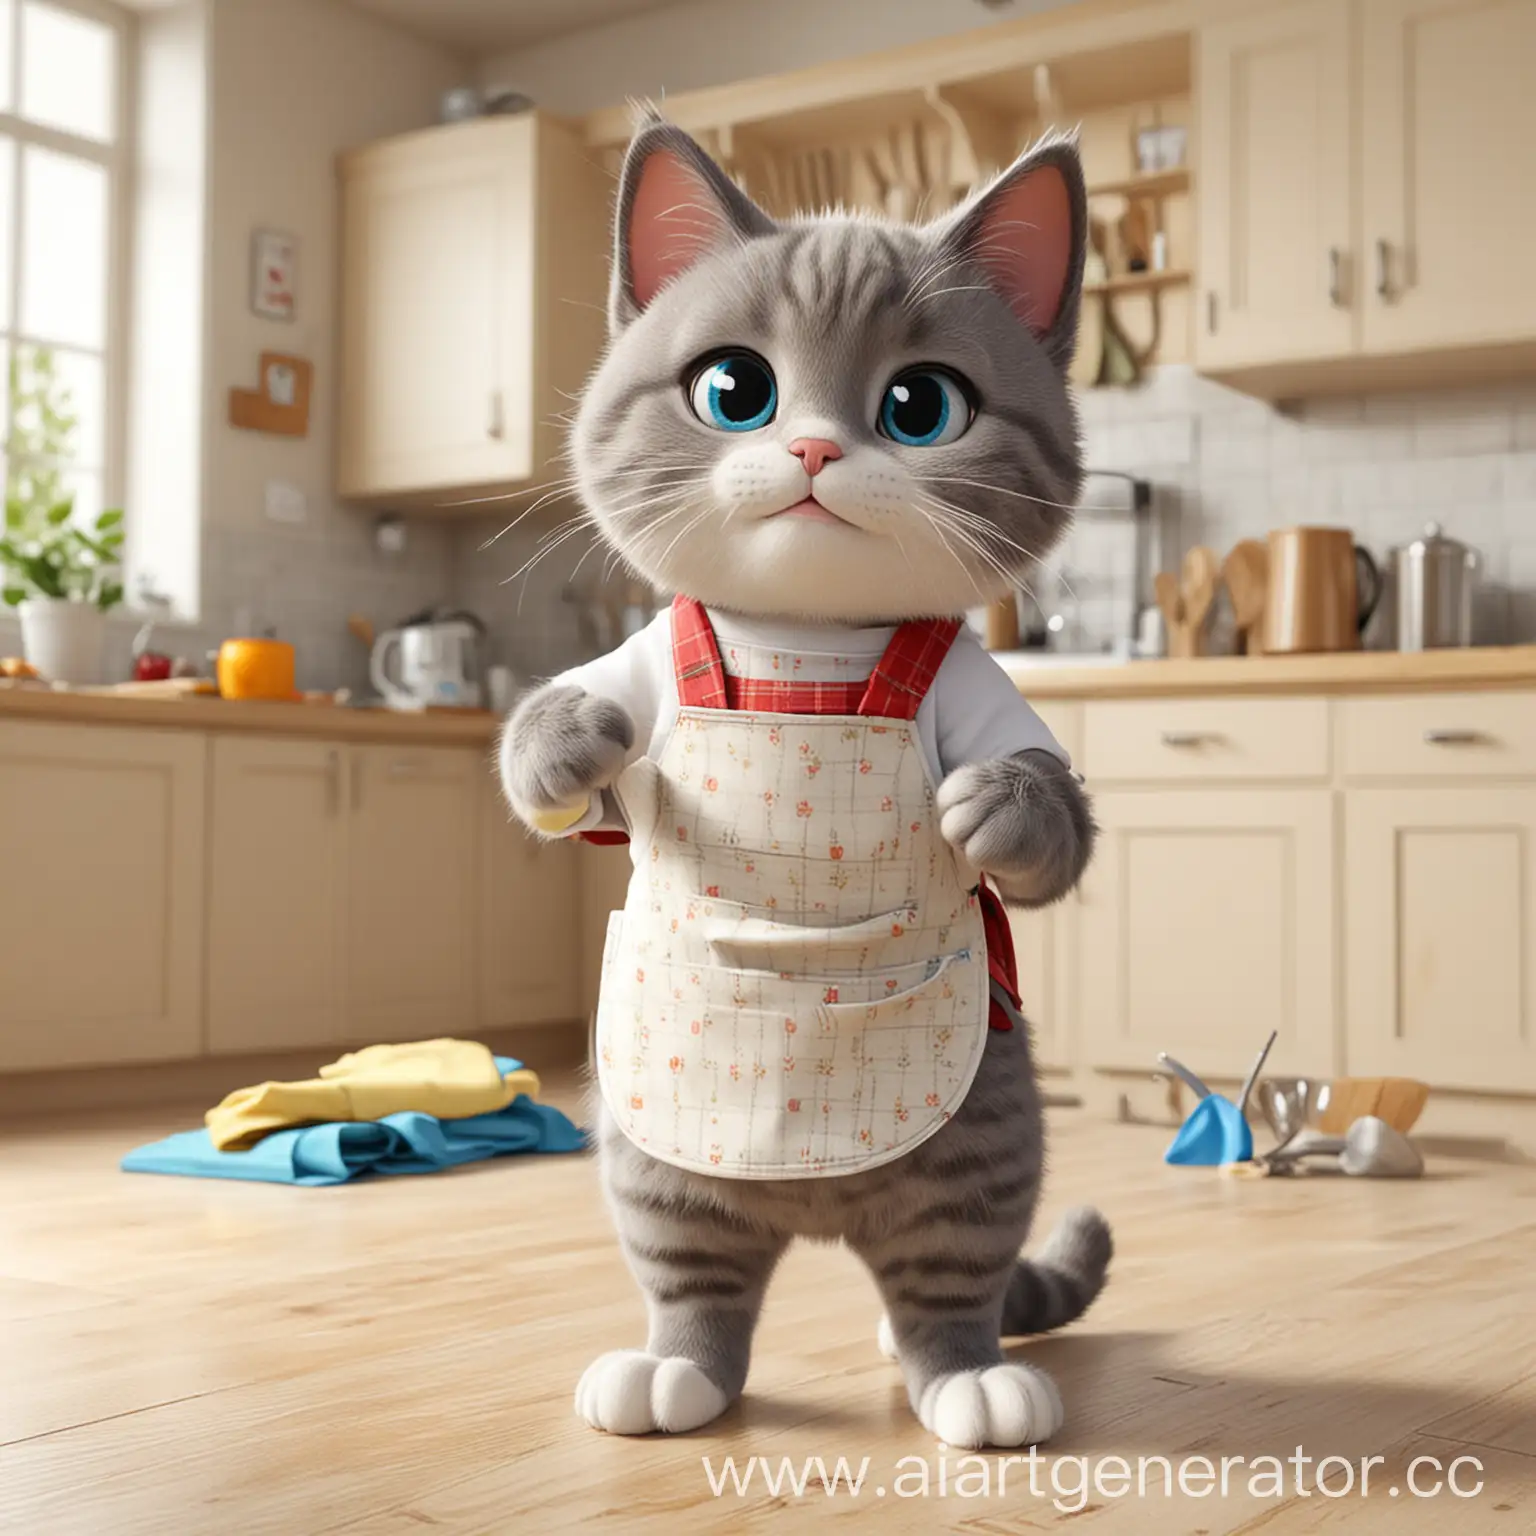 3D家政卡通猫，带着围裙，手上拿着抹布，打扫卫生，以厨房为背景

